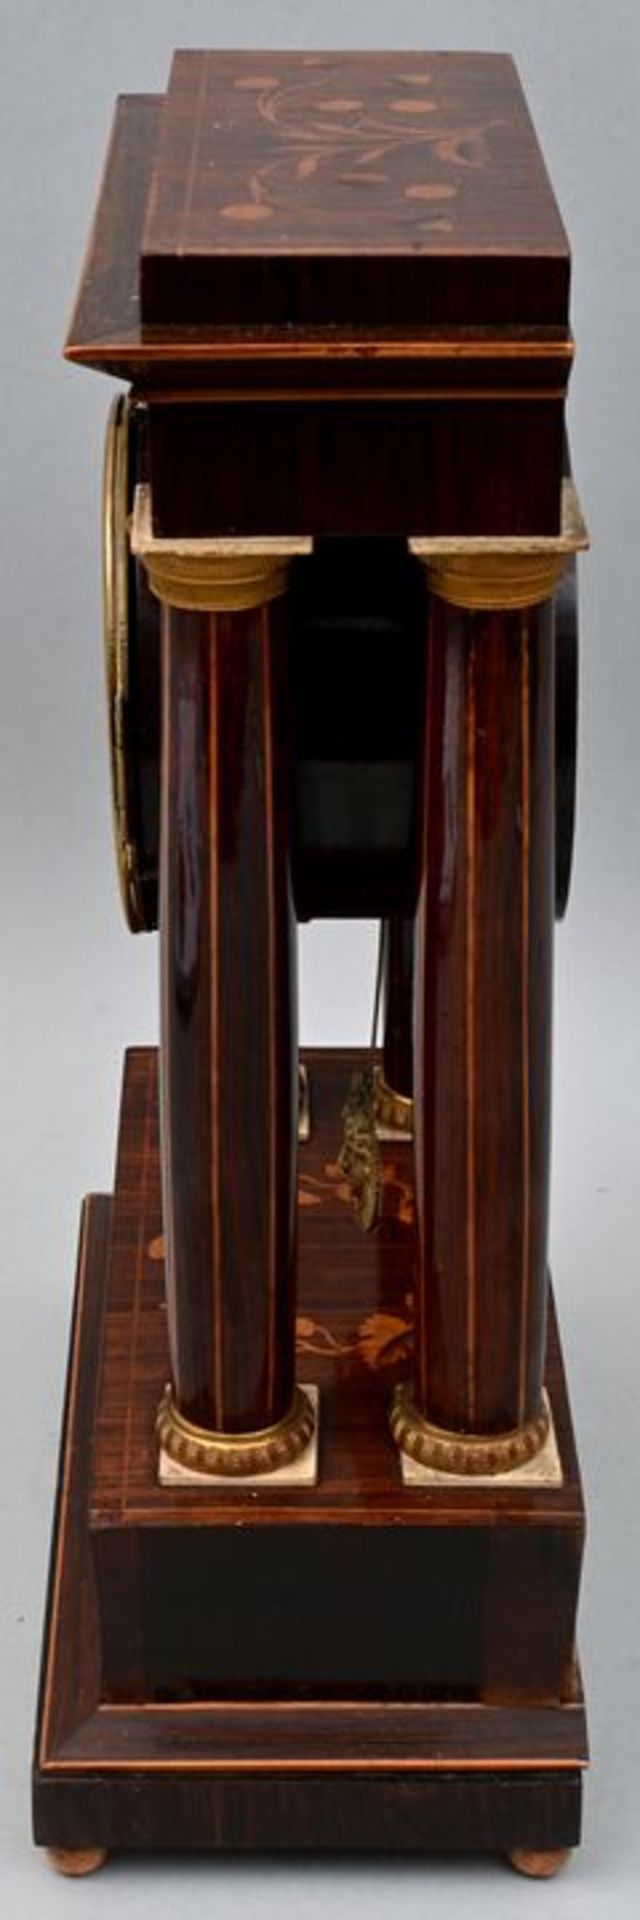 951 Stutzuhr Franz Liszt, Wien, Holzintarsien/ mantel clock - Image 5 of 7